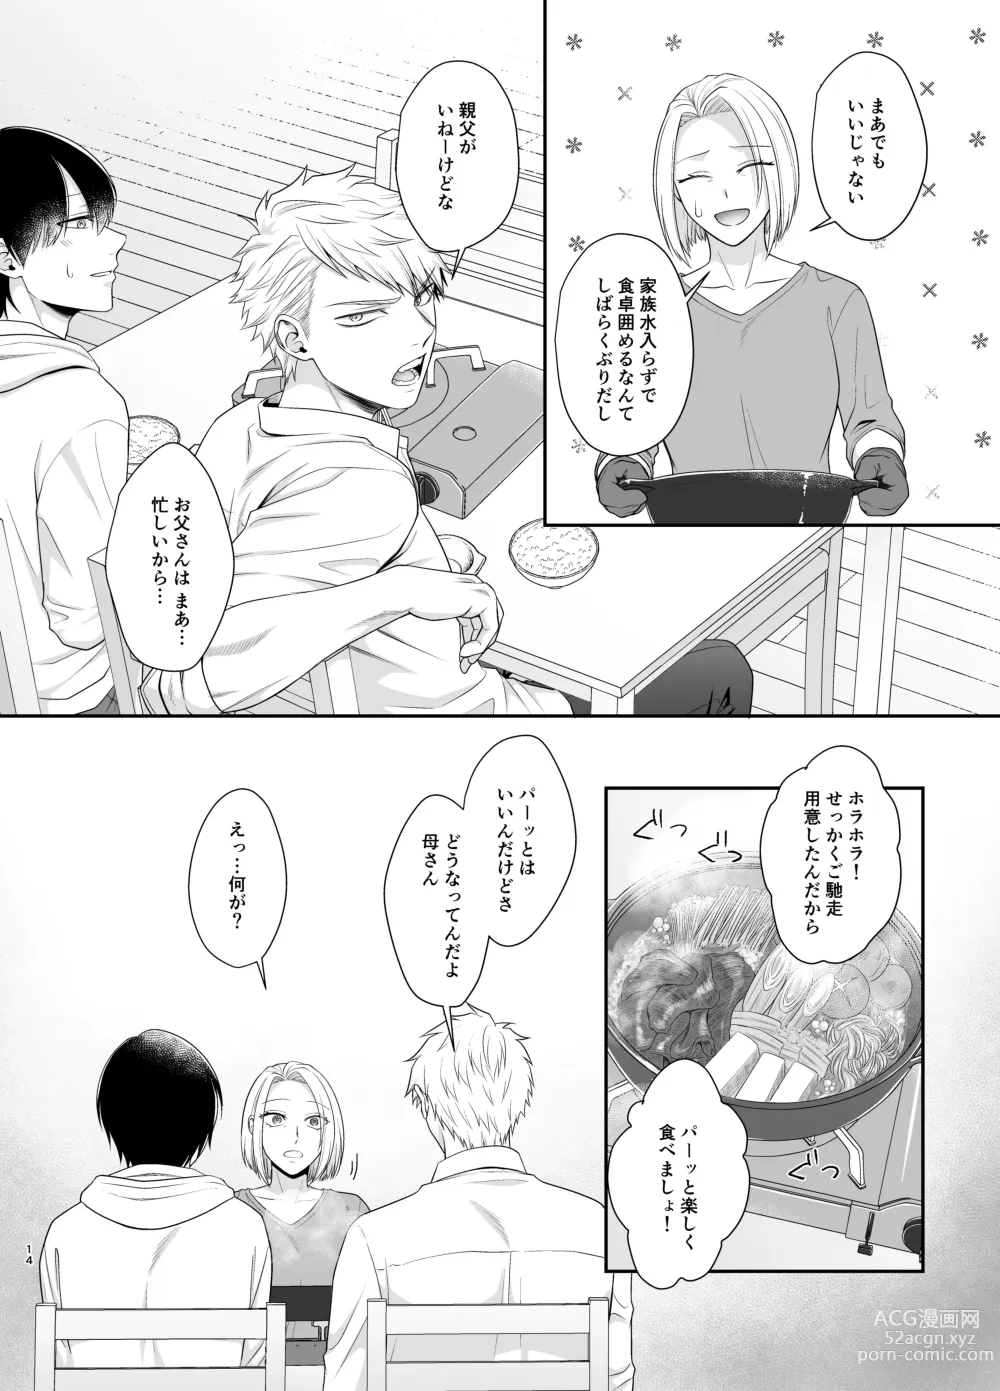 Page 14 of doujinshi Bokutachi, Kyoudai ni wa Mou Modorenai Mitai desu.